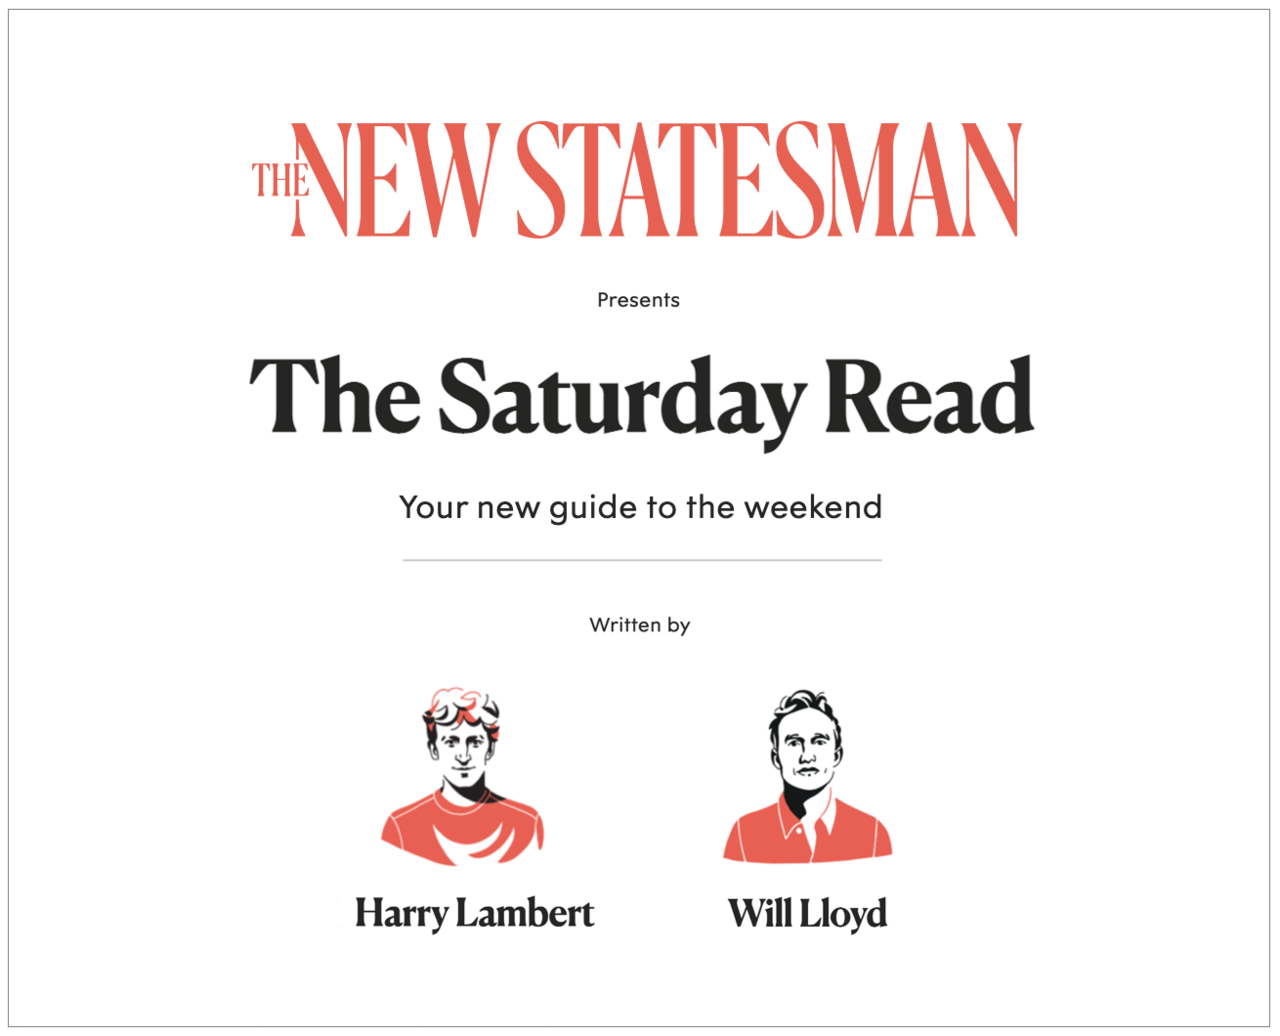 The Saturday Read